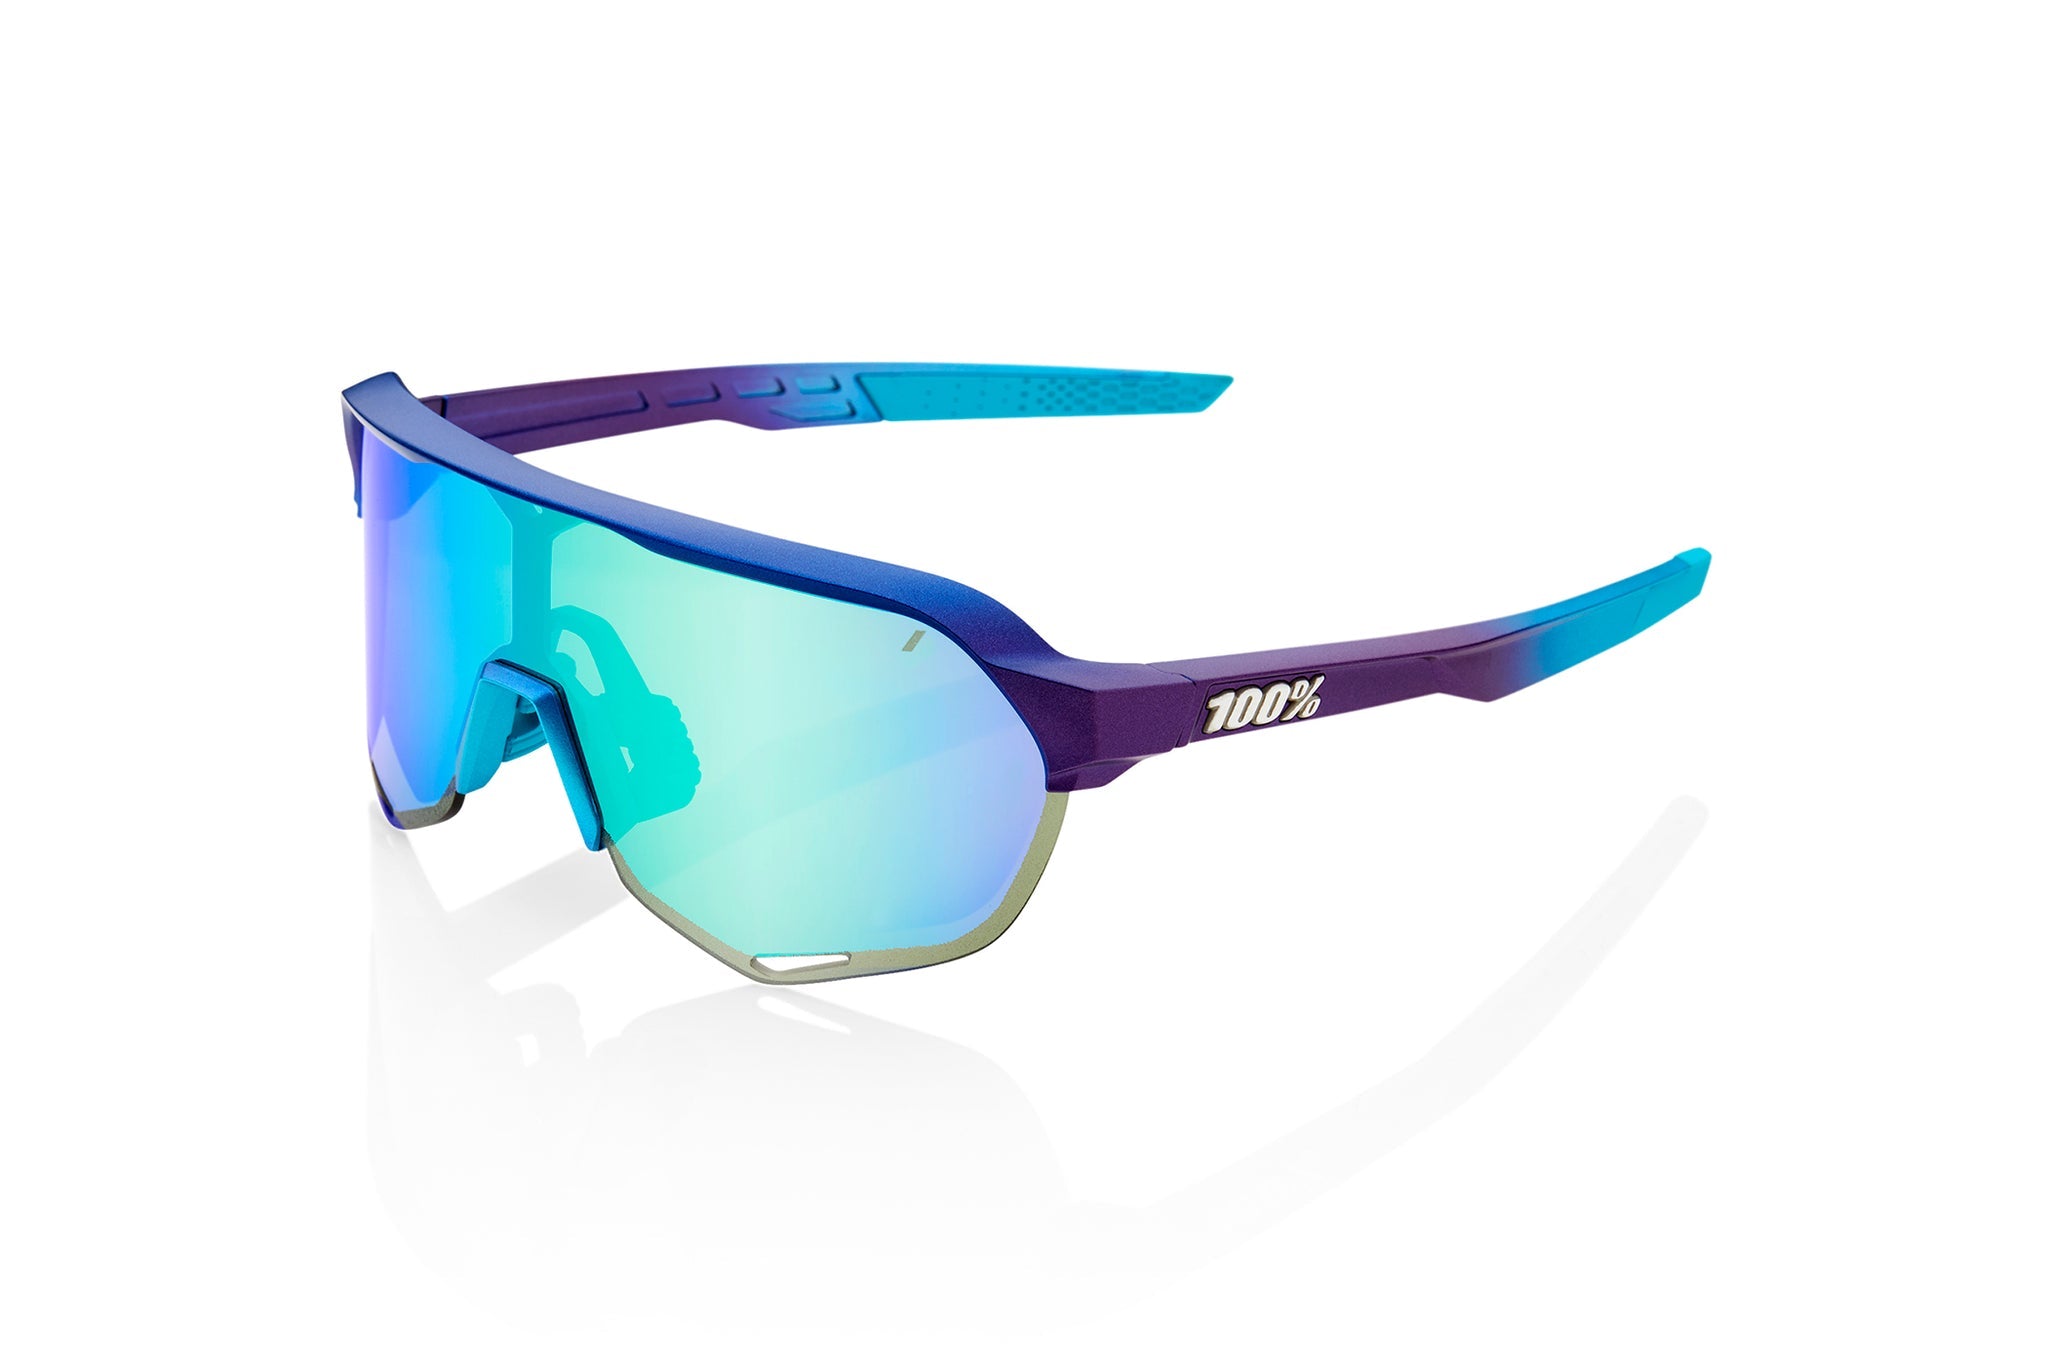 100% S2 Sunglasses - Matte Metallic Into the Fade - Blue Topaz Multilayer Mirror